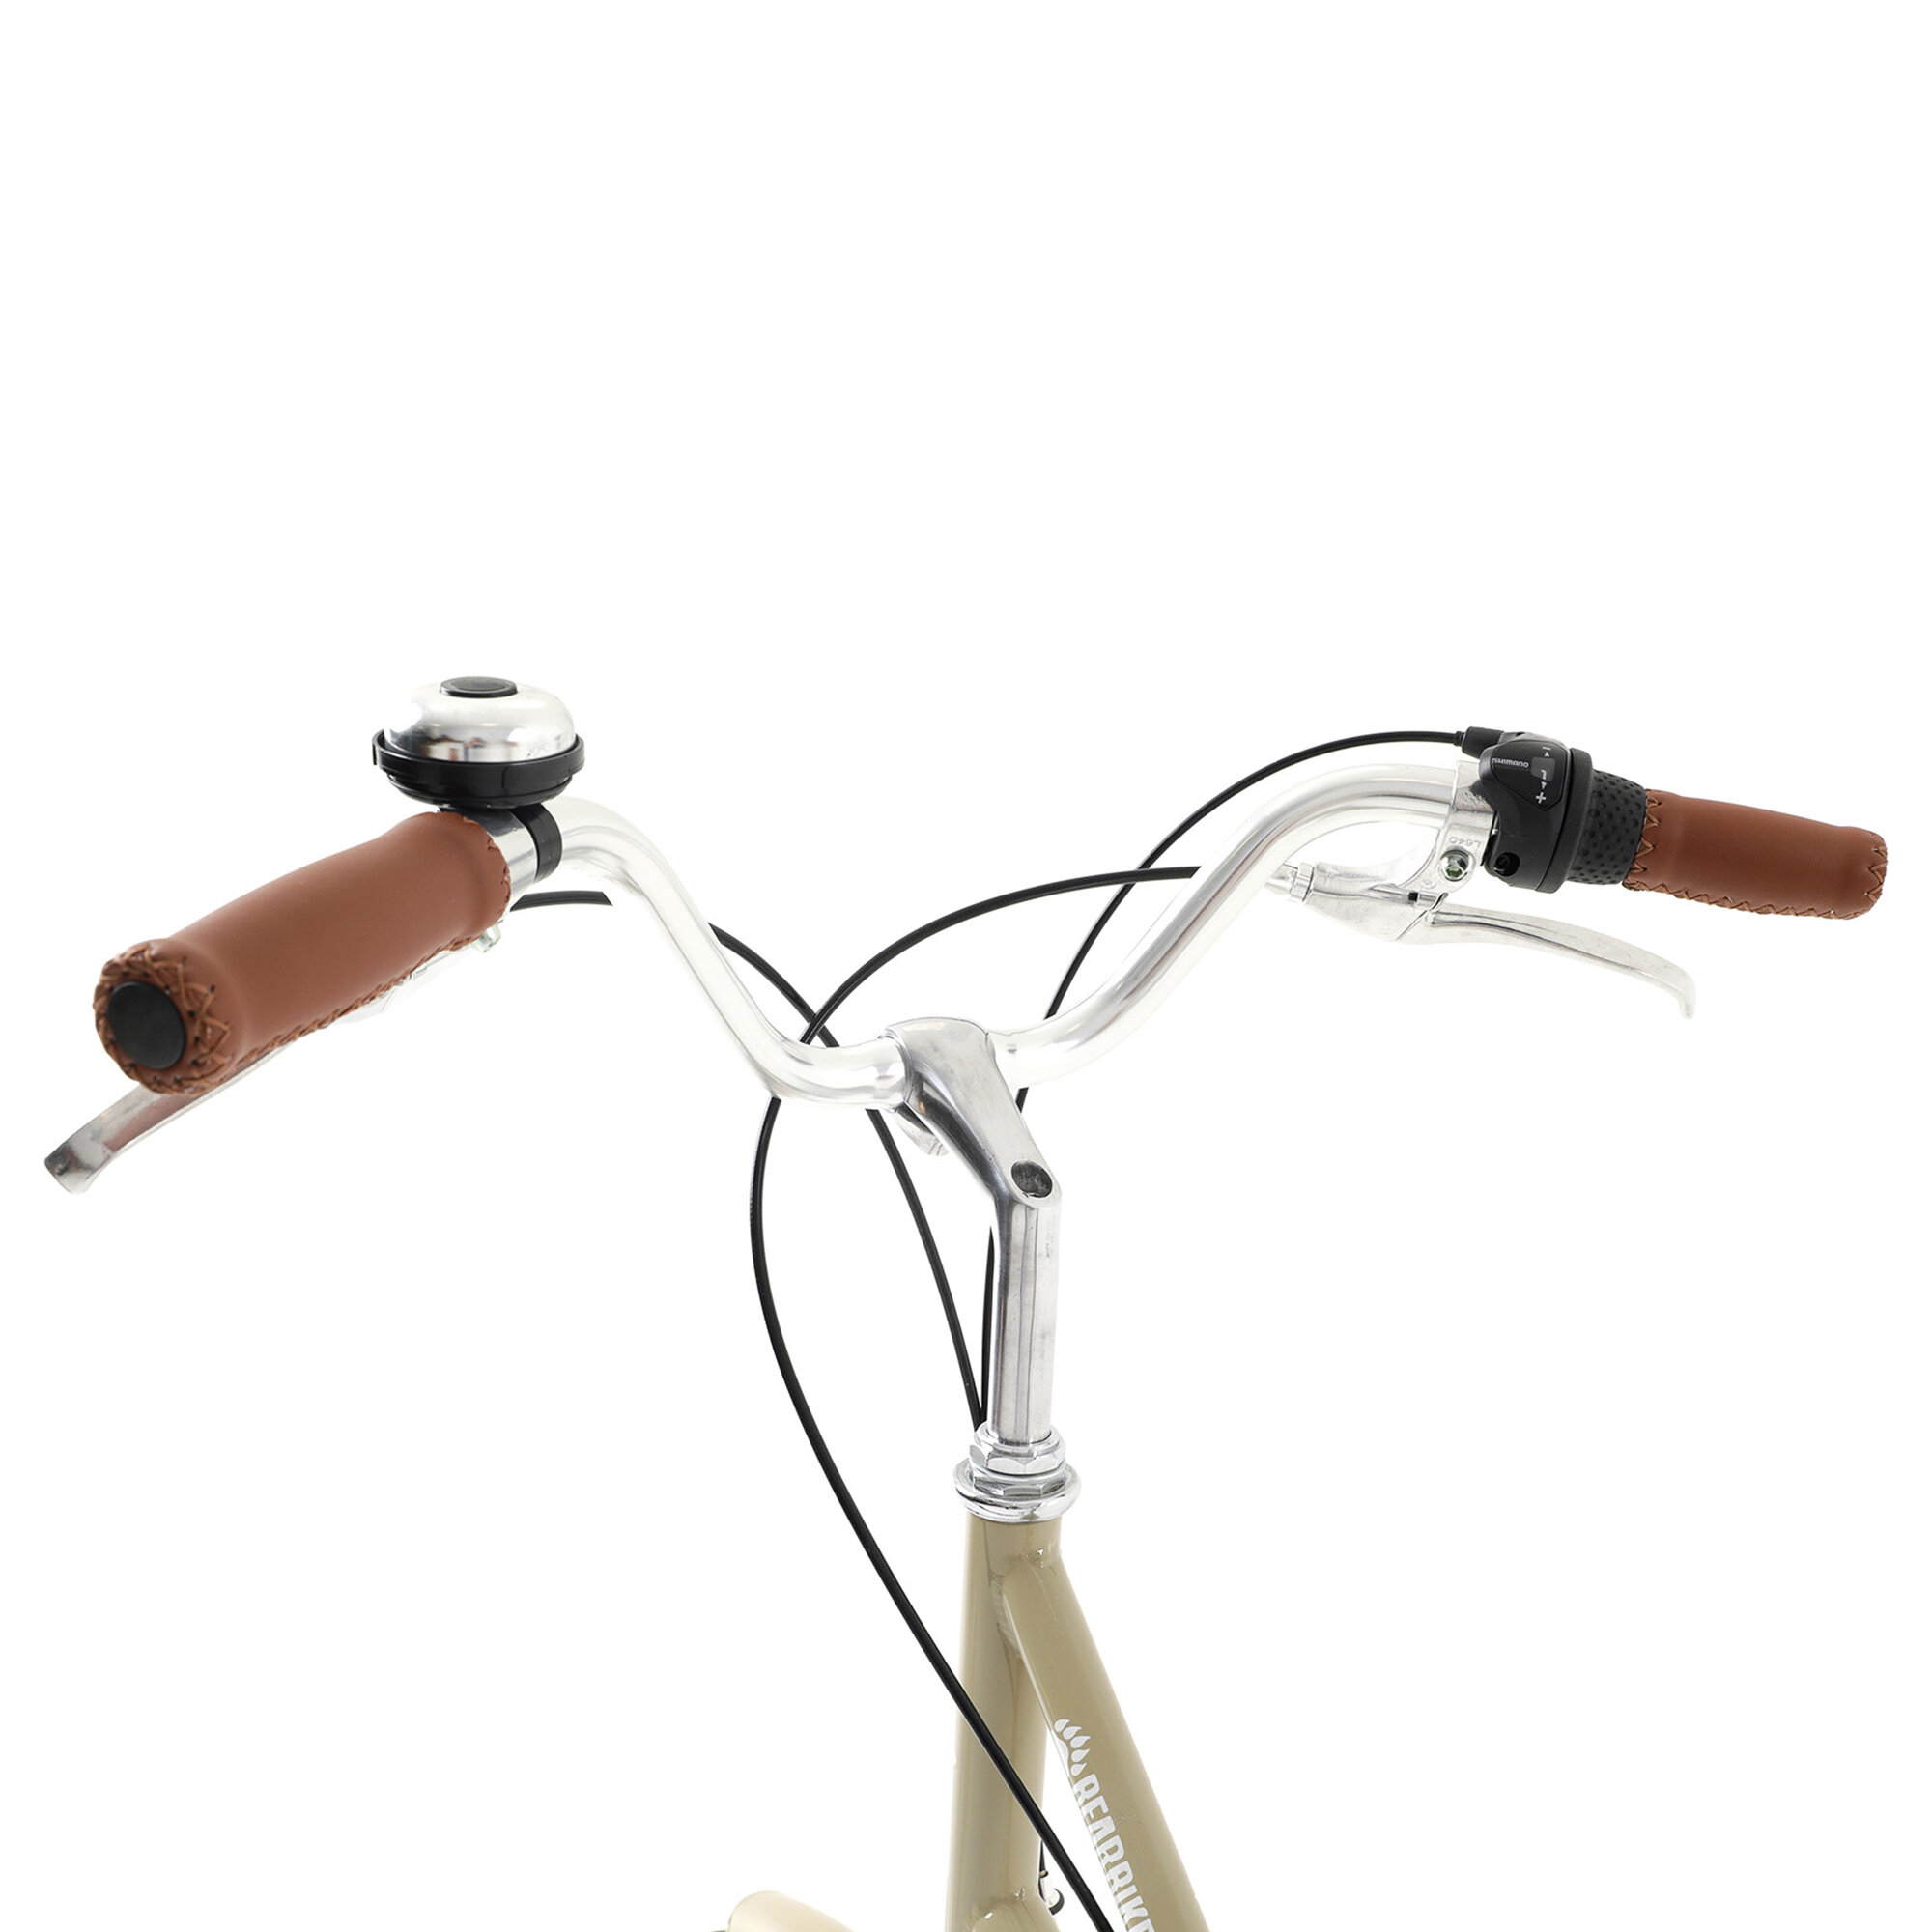 Велосипед BEARBIKE Algeria (2021), городской (взрослый), рама 18", колеса 28", кремовый, 15.55кг [1bkb1c183z02] - фото №11